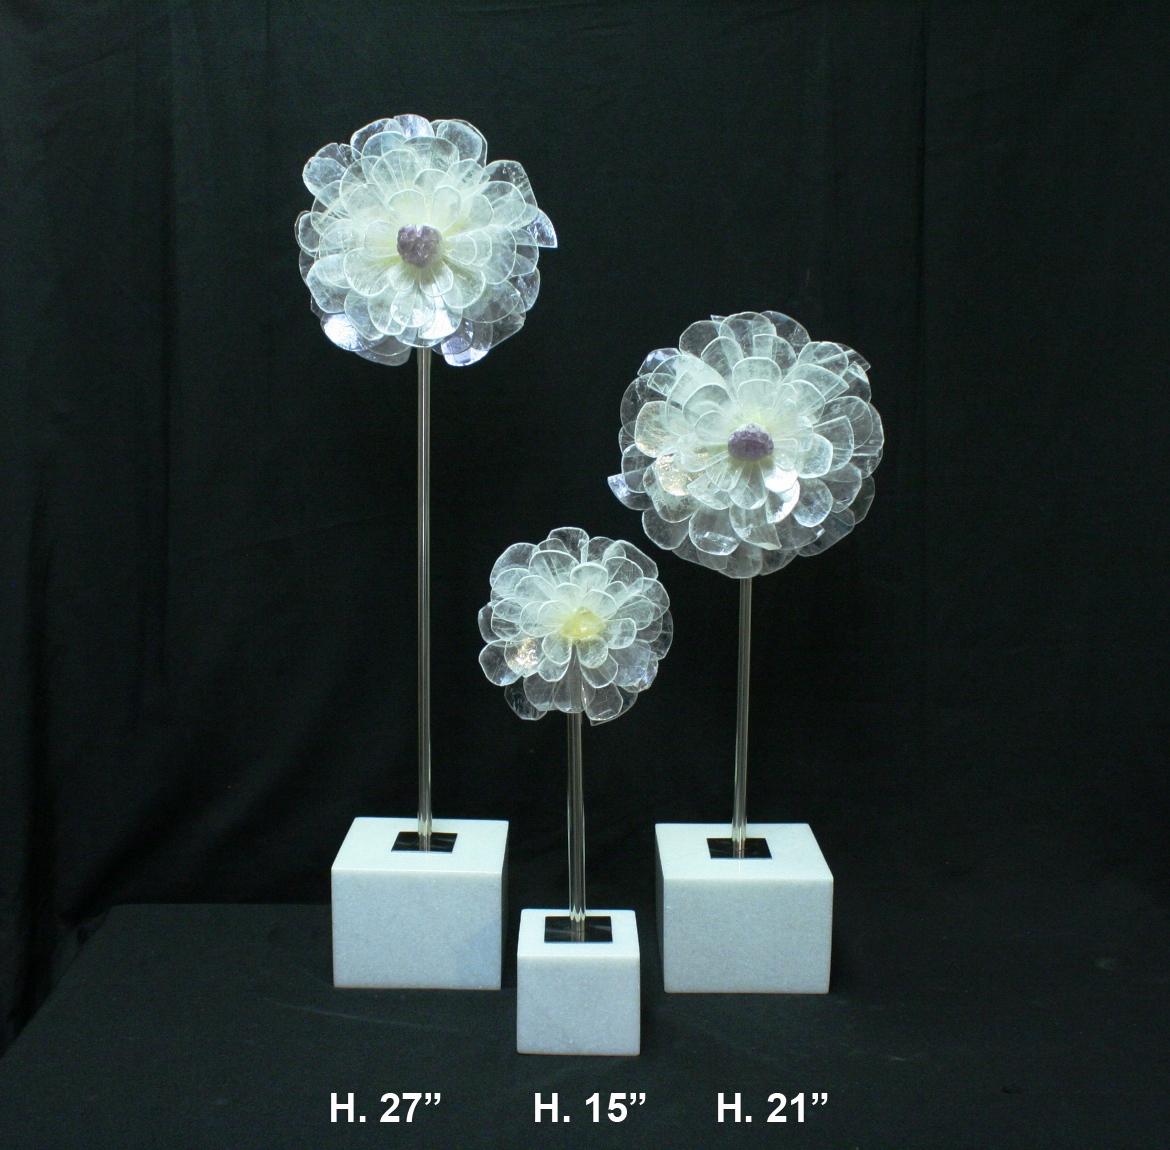 Satz von drei abgestuften Blumen-Tischdekorationen mit einer Quarz-Geode in der Mitte, die von Chromstäben gestützt werden, alle auf quadratischen Marmorsockeln ruhend.

Große Blume Abmessungen: H. 27